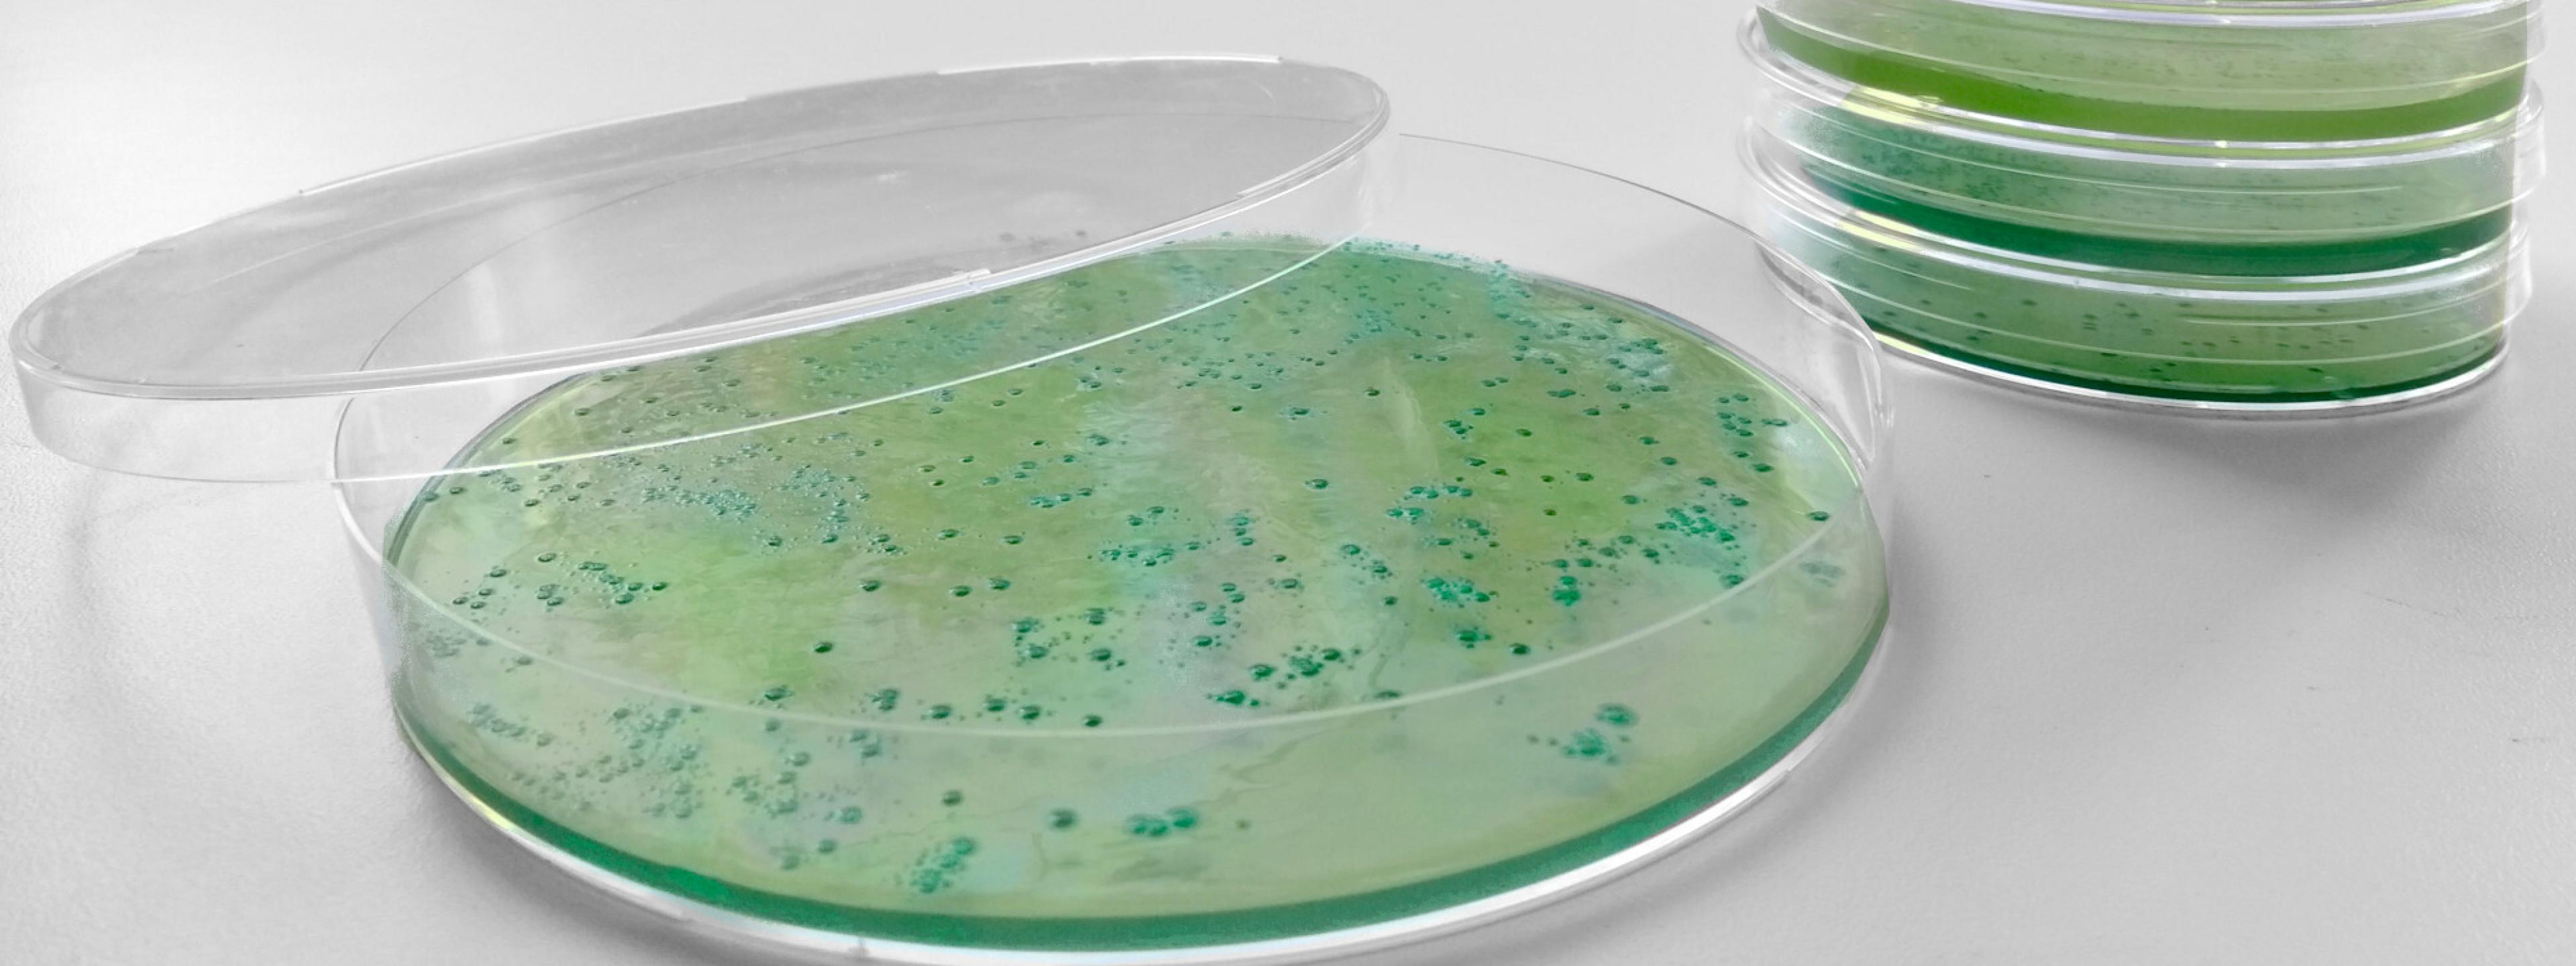 Grünlich-gelber Agar in Petrischalen aus Kunststoff. Auf dem Agar wachsen grübe Bakterienkolonien.